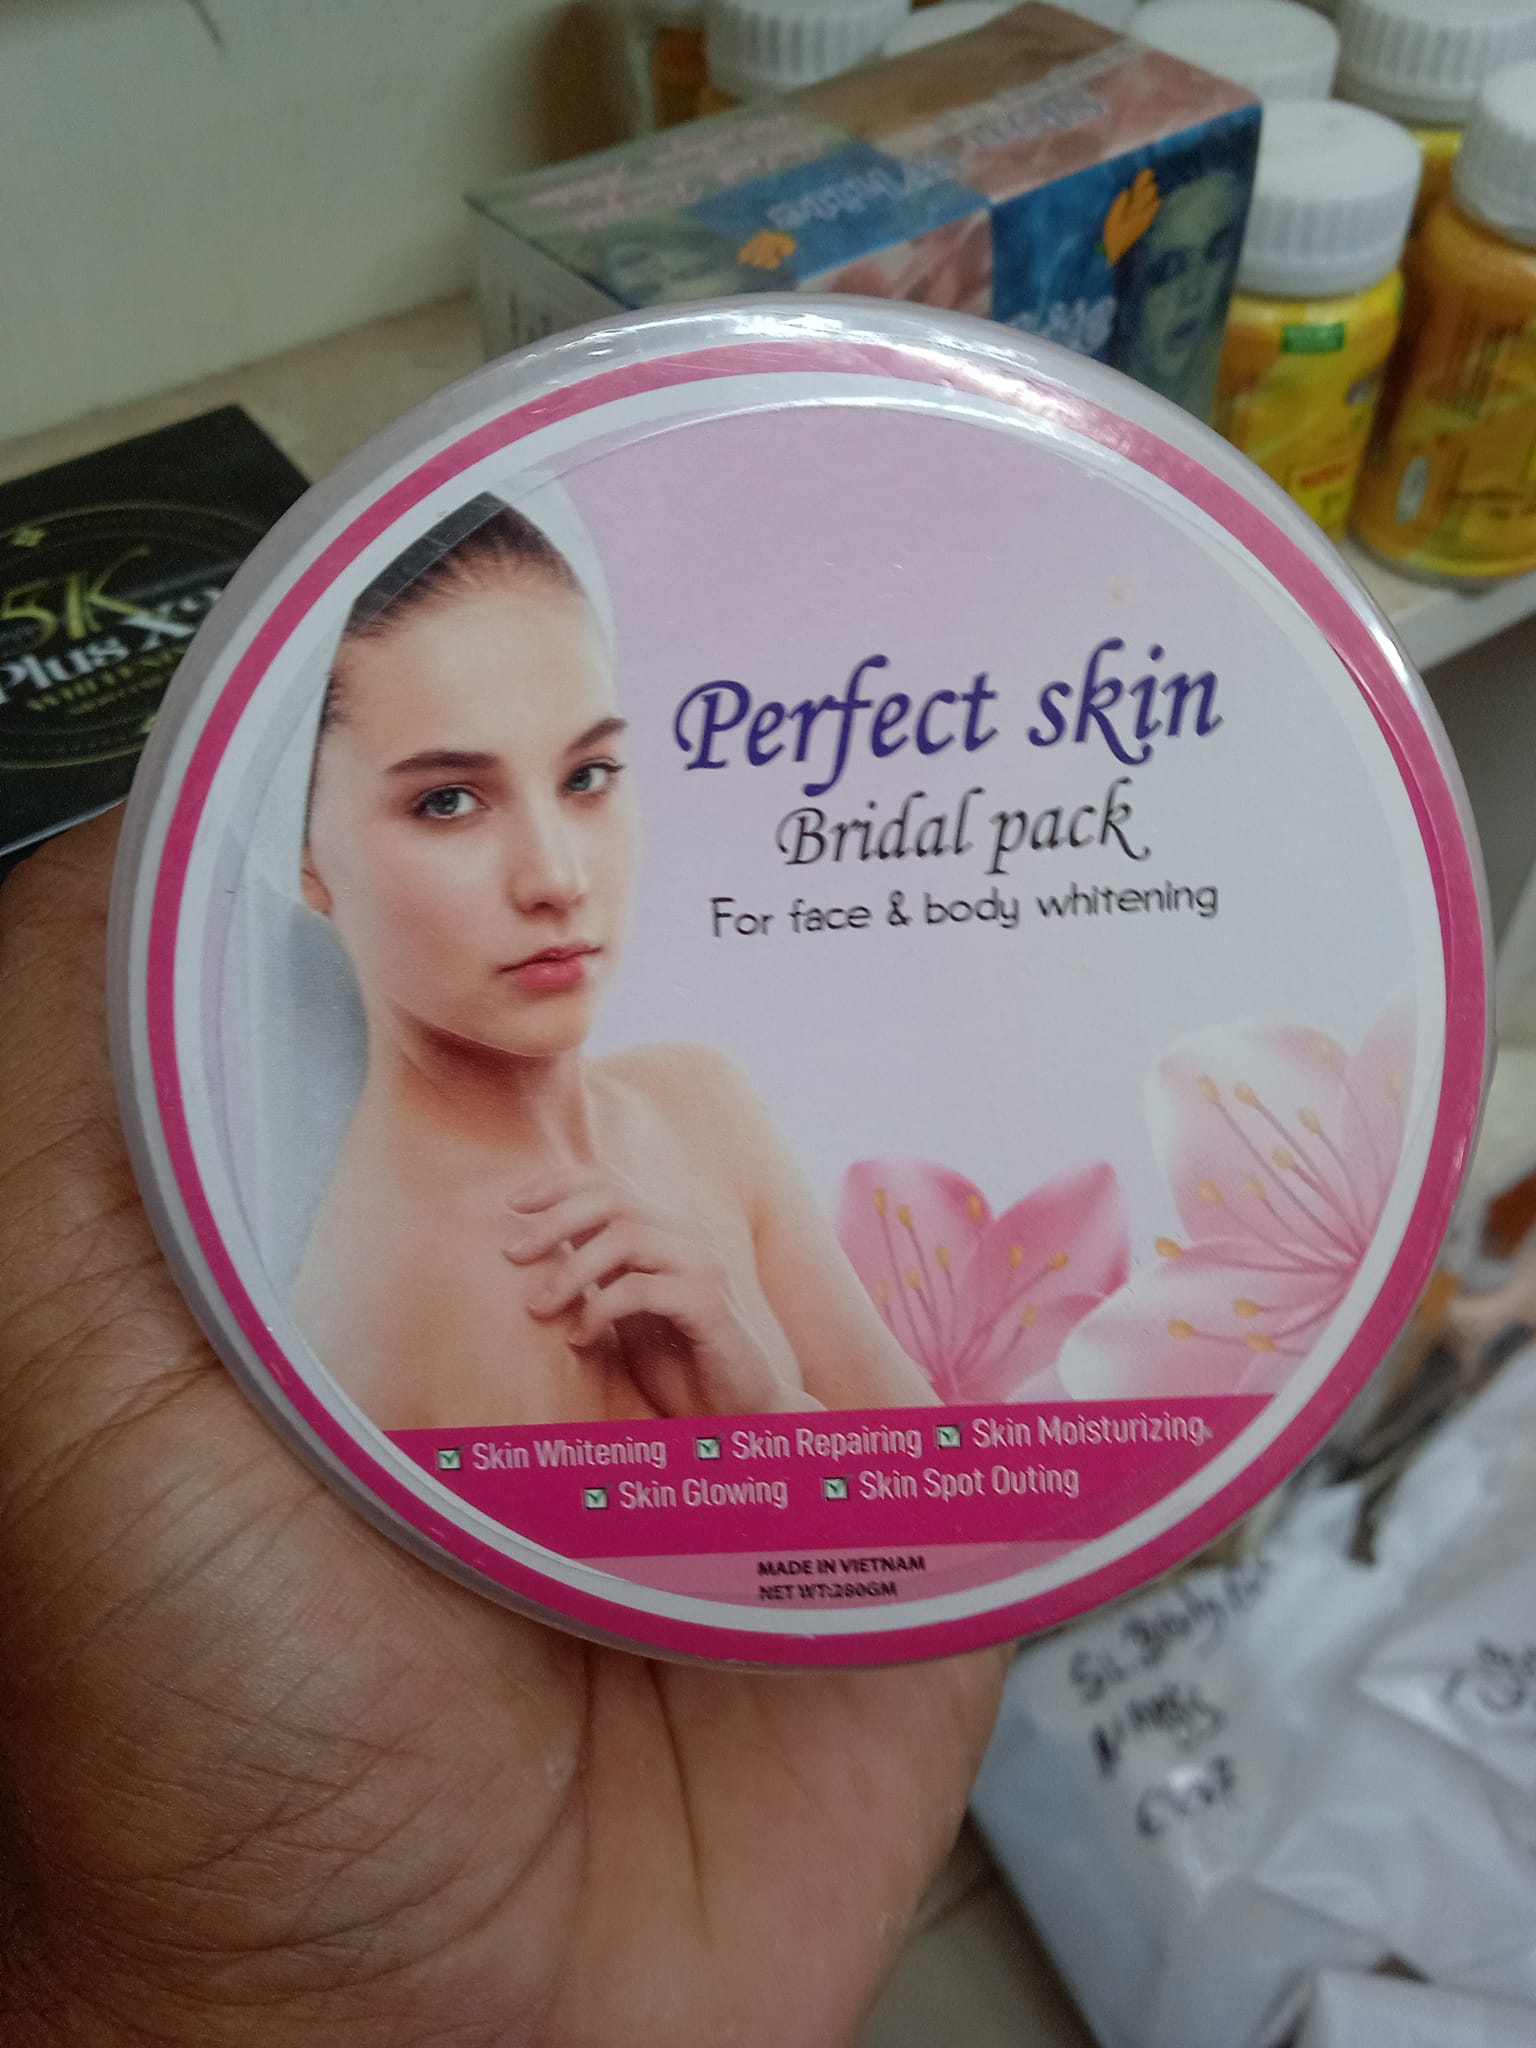 Perfect skin bridal pack 280gm